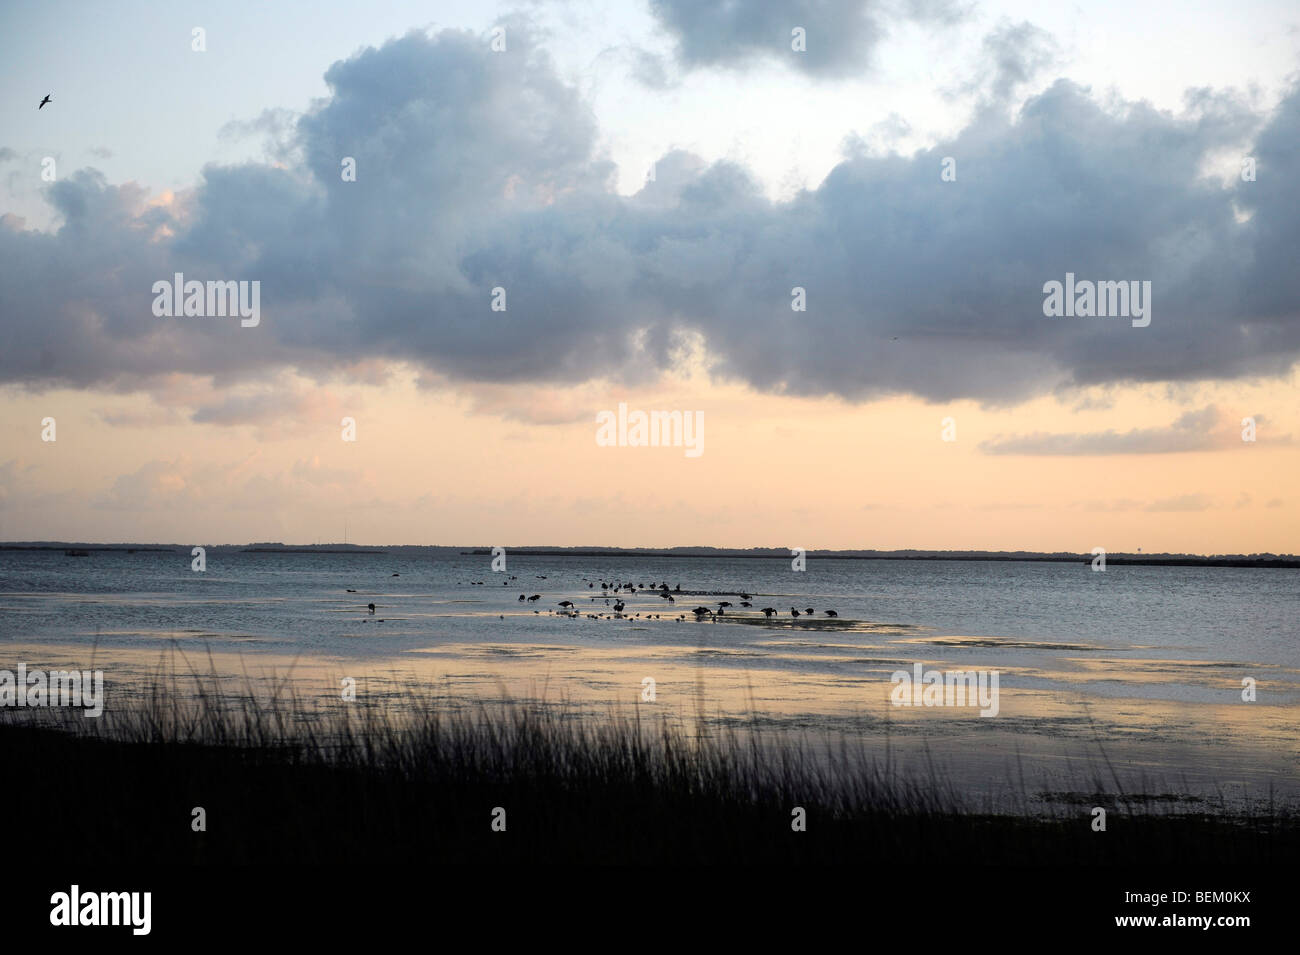 Les canards et les oiseaux se nourrissent sur le son de la baie dans les clubs Currituck section corolle dans l'Outer Banks de la Caroline du Nord. Banque D'Images